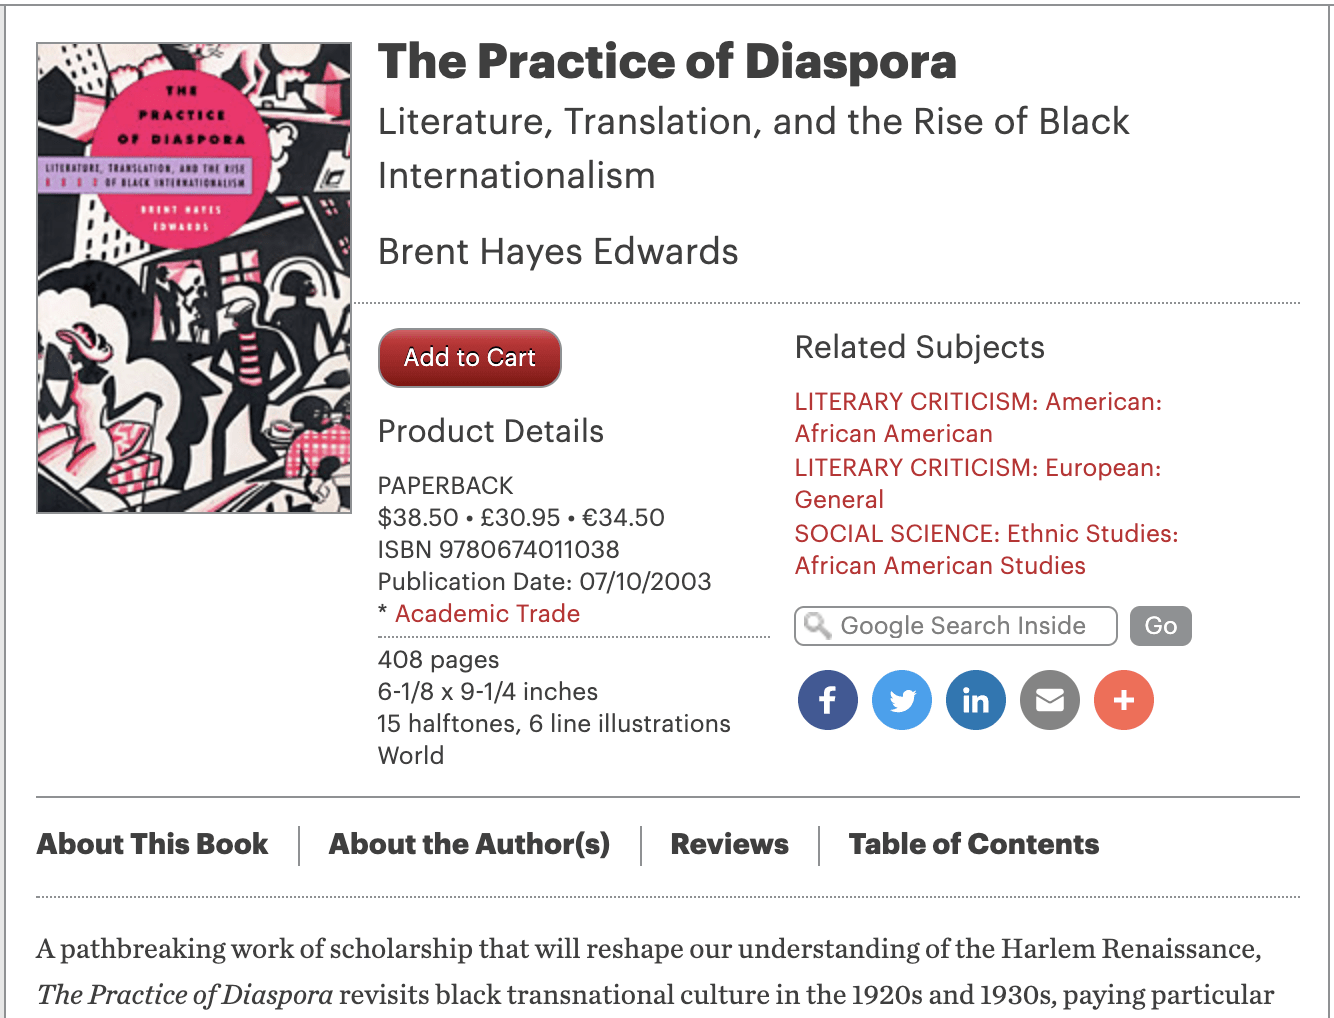 Article de Abdoulaye Gueye en 2005 suite à la parution du livre The practice of Diaspora de Brent Hayes Edwards